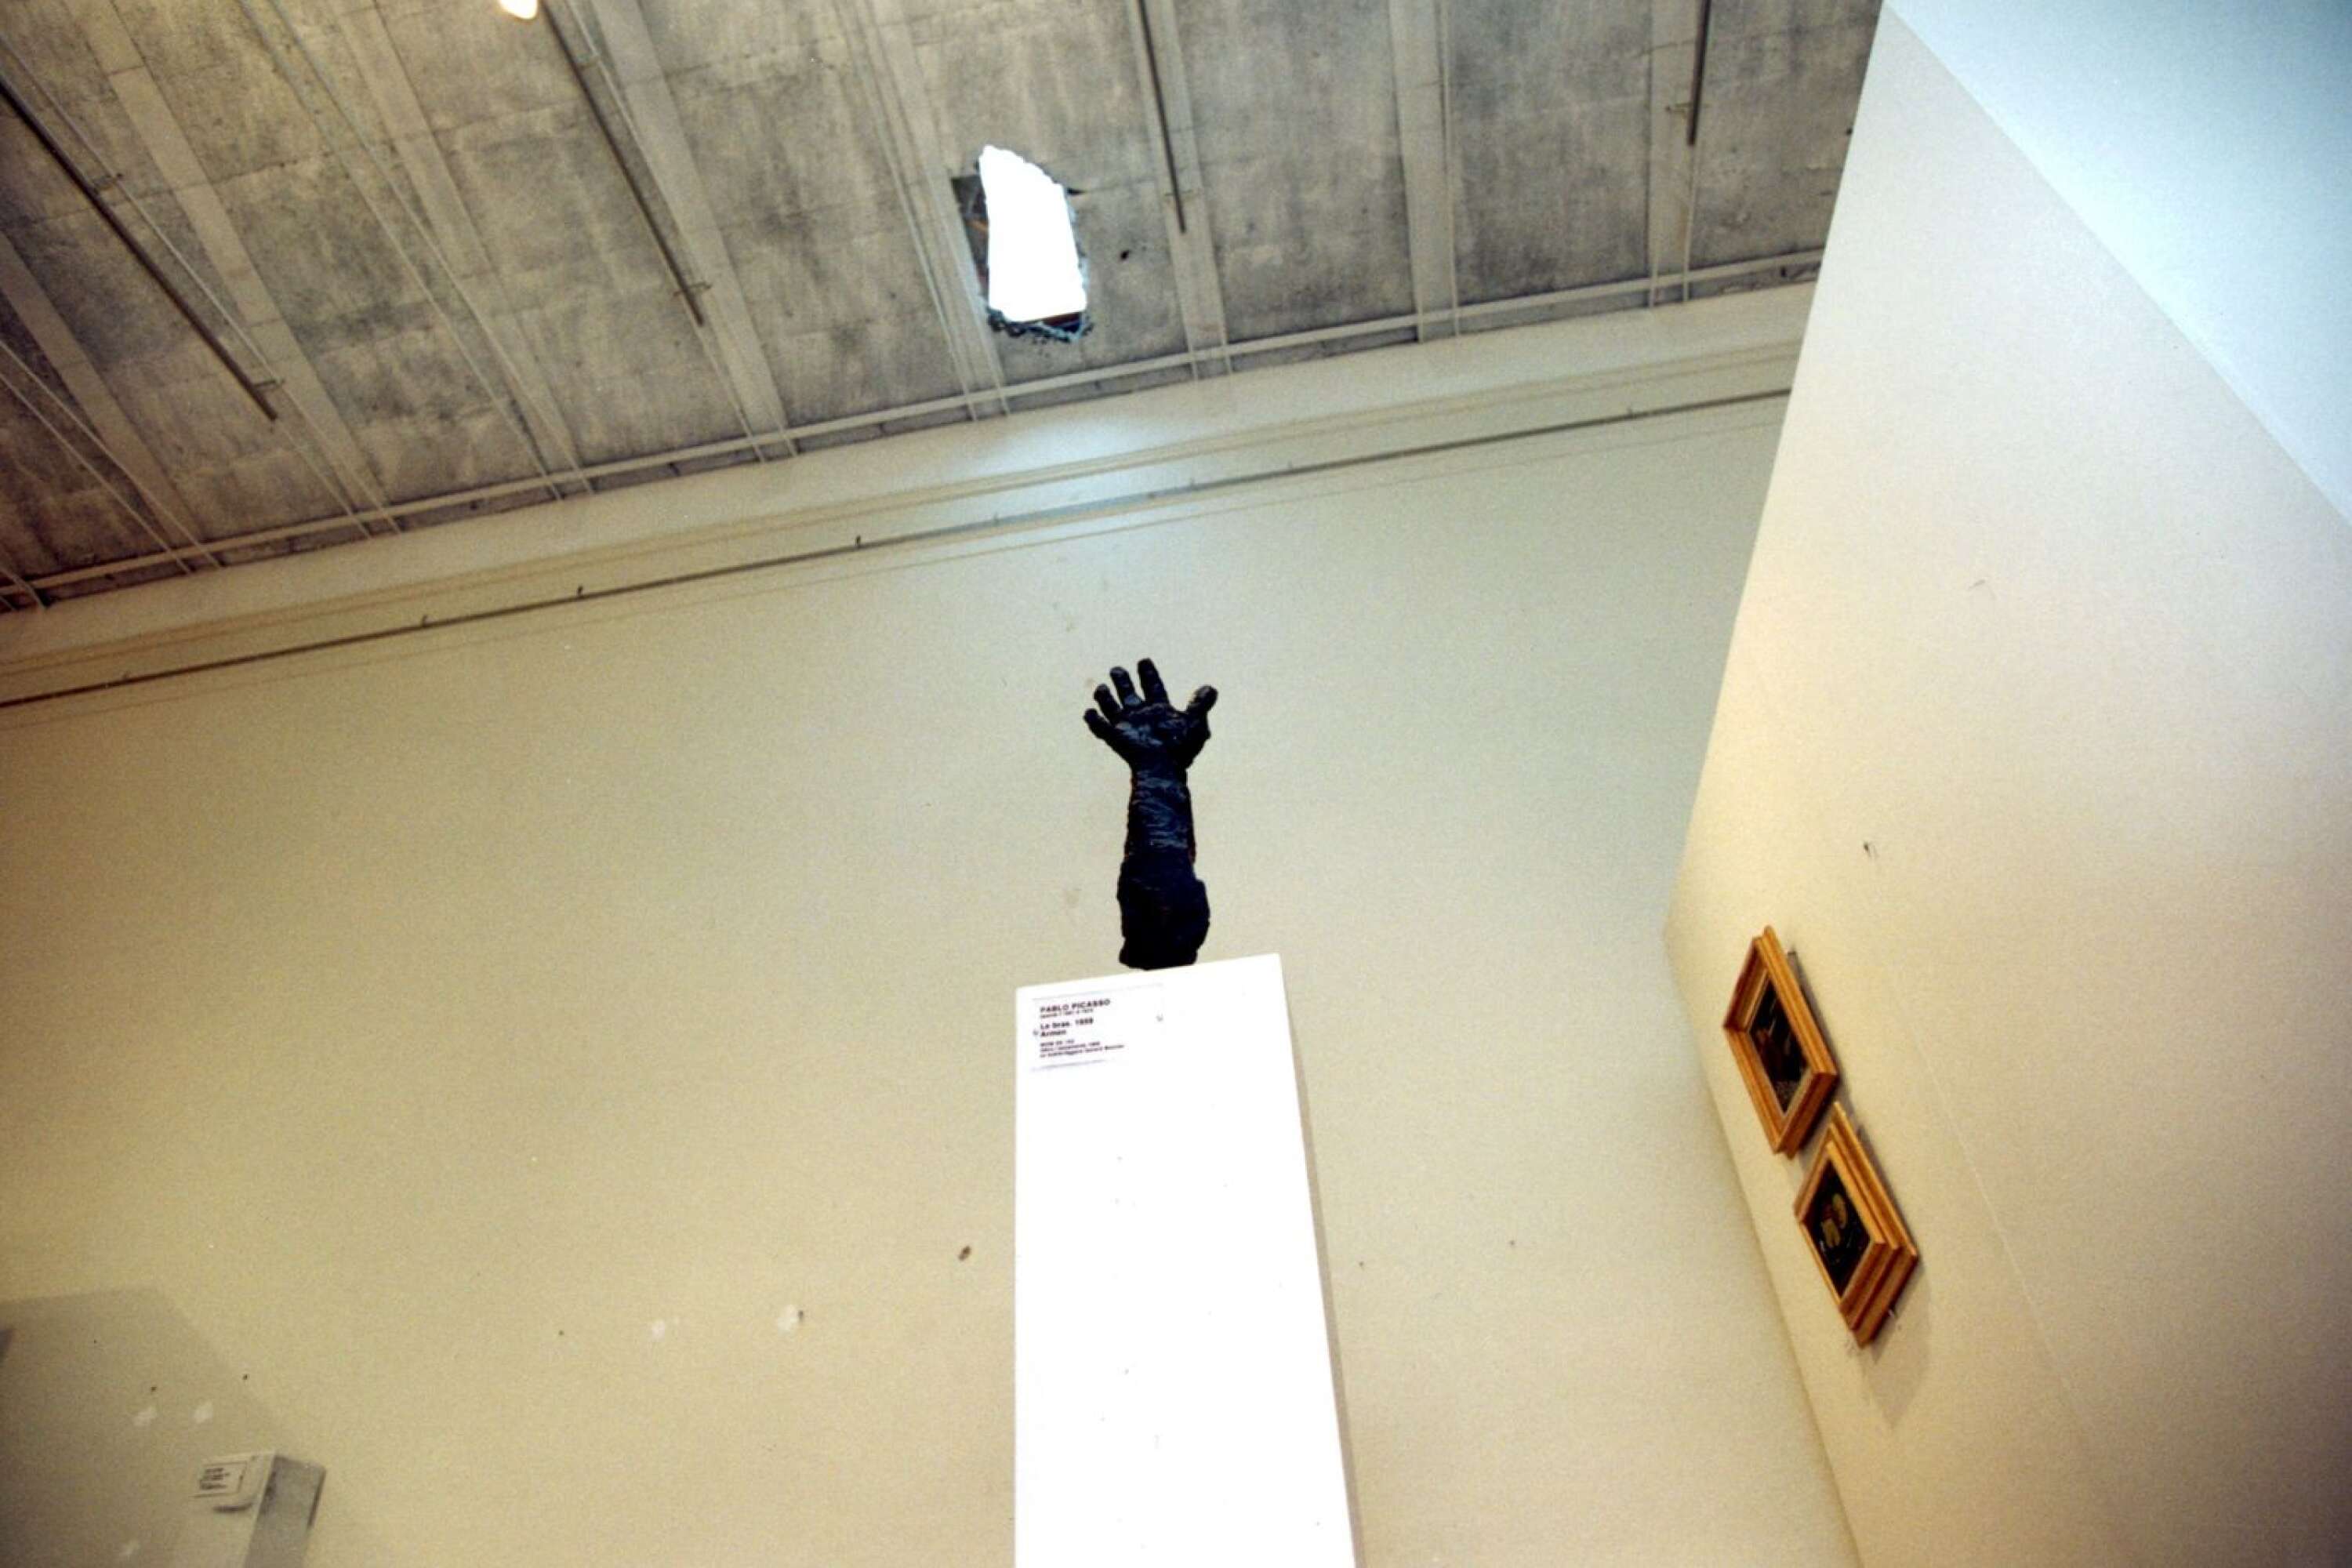 I november utsattes Moderna museet i Stockholm för en spektakulär konstkupp, då tjuvarna sågade sig in via taket. I efterspelet agerade Clark Olofsson mellanhand och försökte att sälja tillbaka flera verk. Arkivbild.